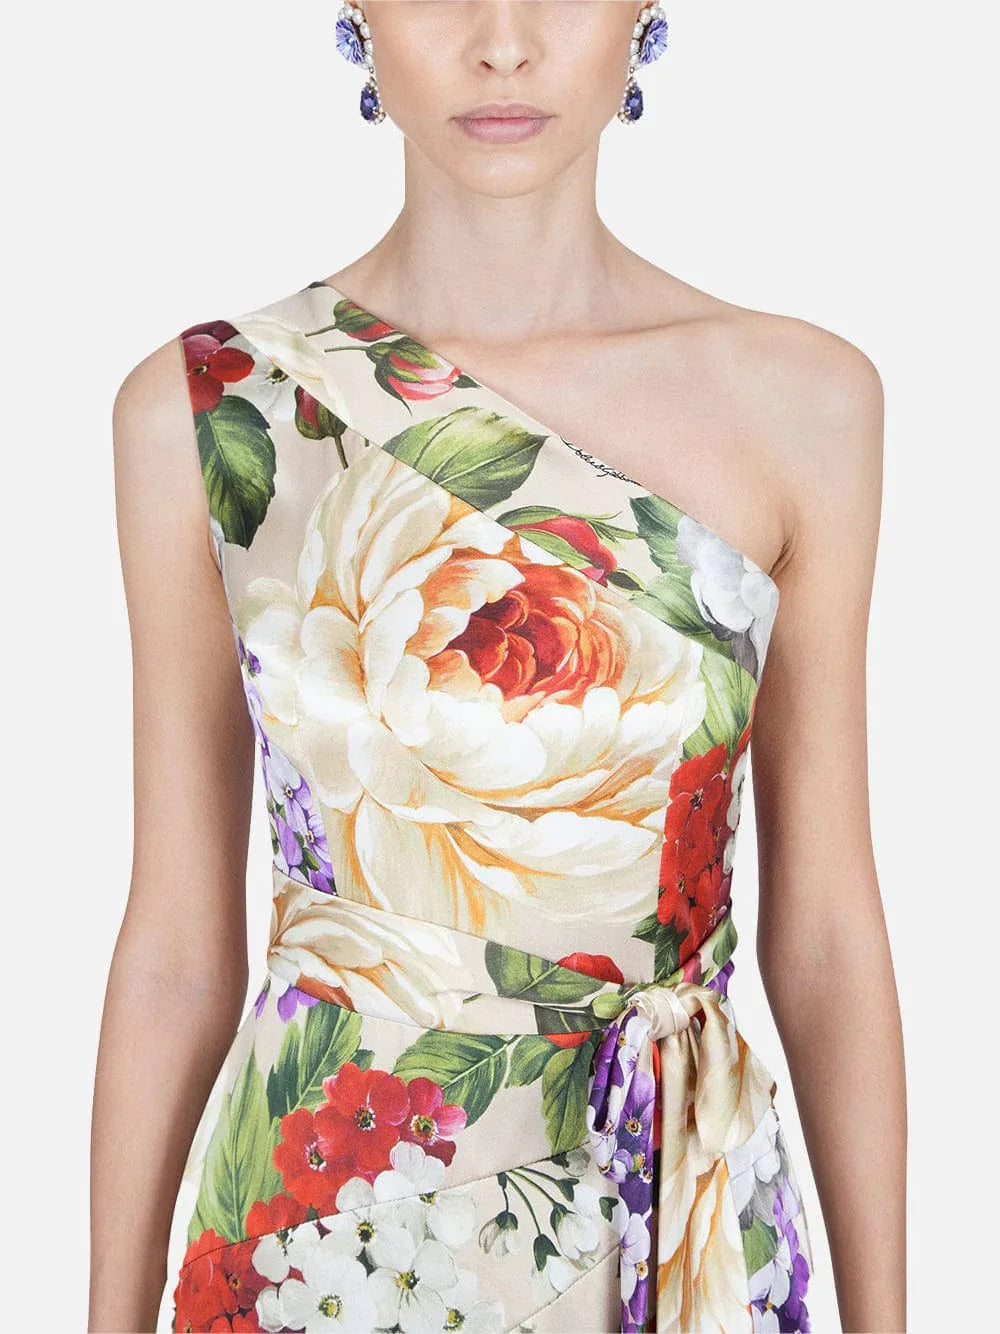 Dolce & Gabbana One-Shoulder Floral Print Dress